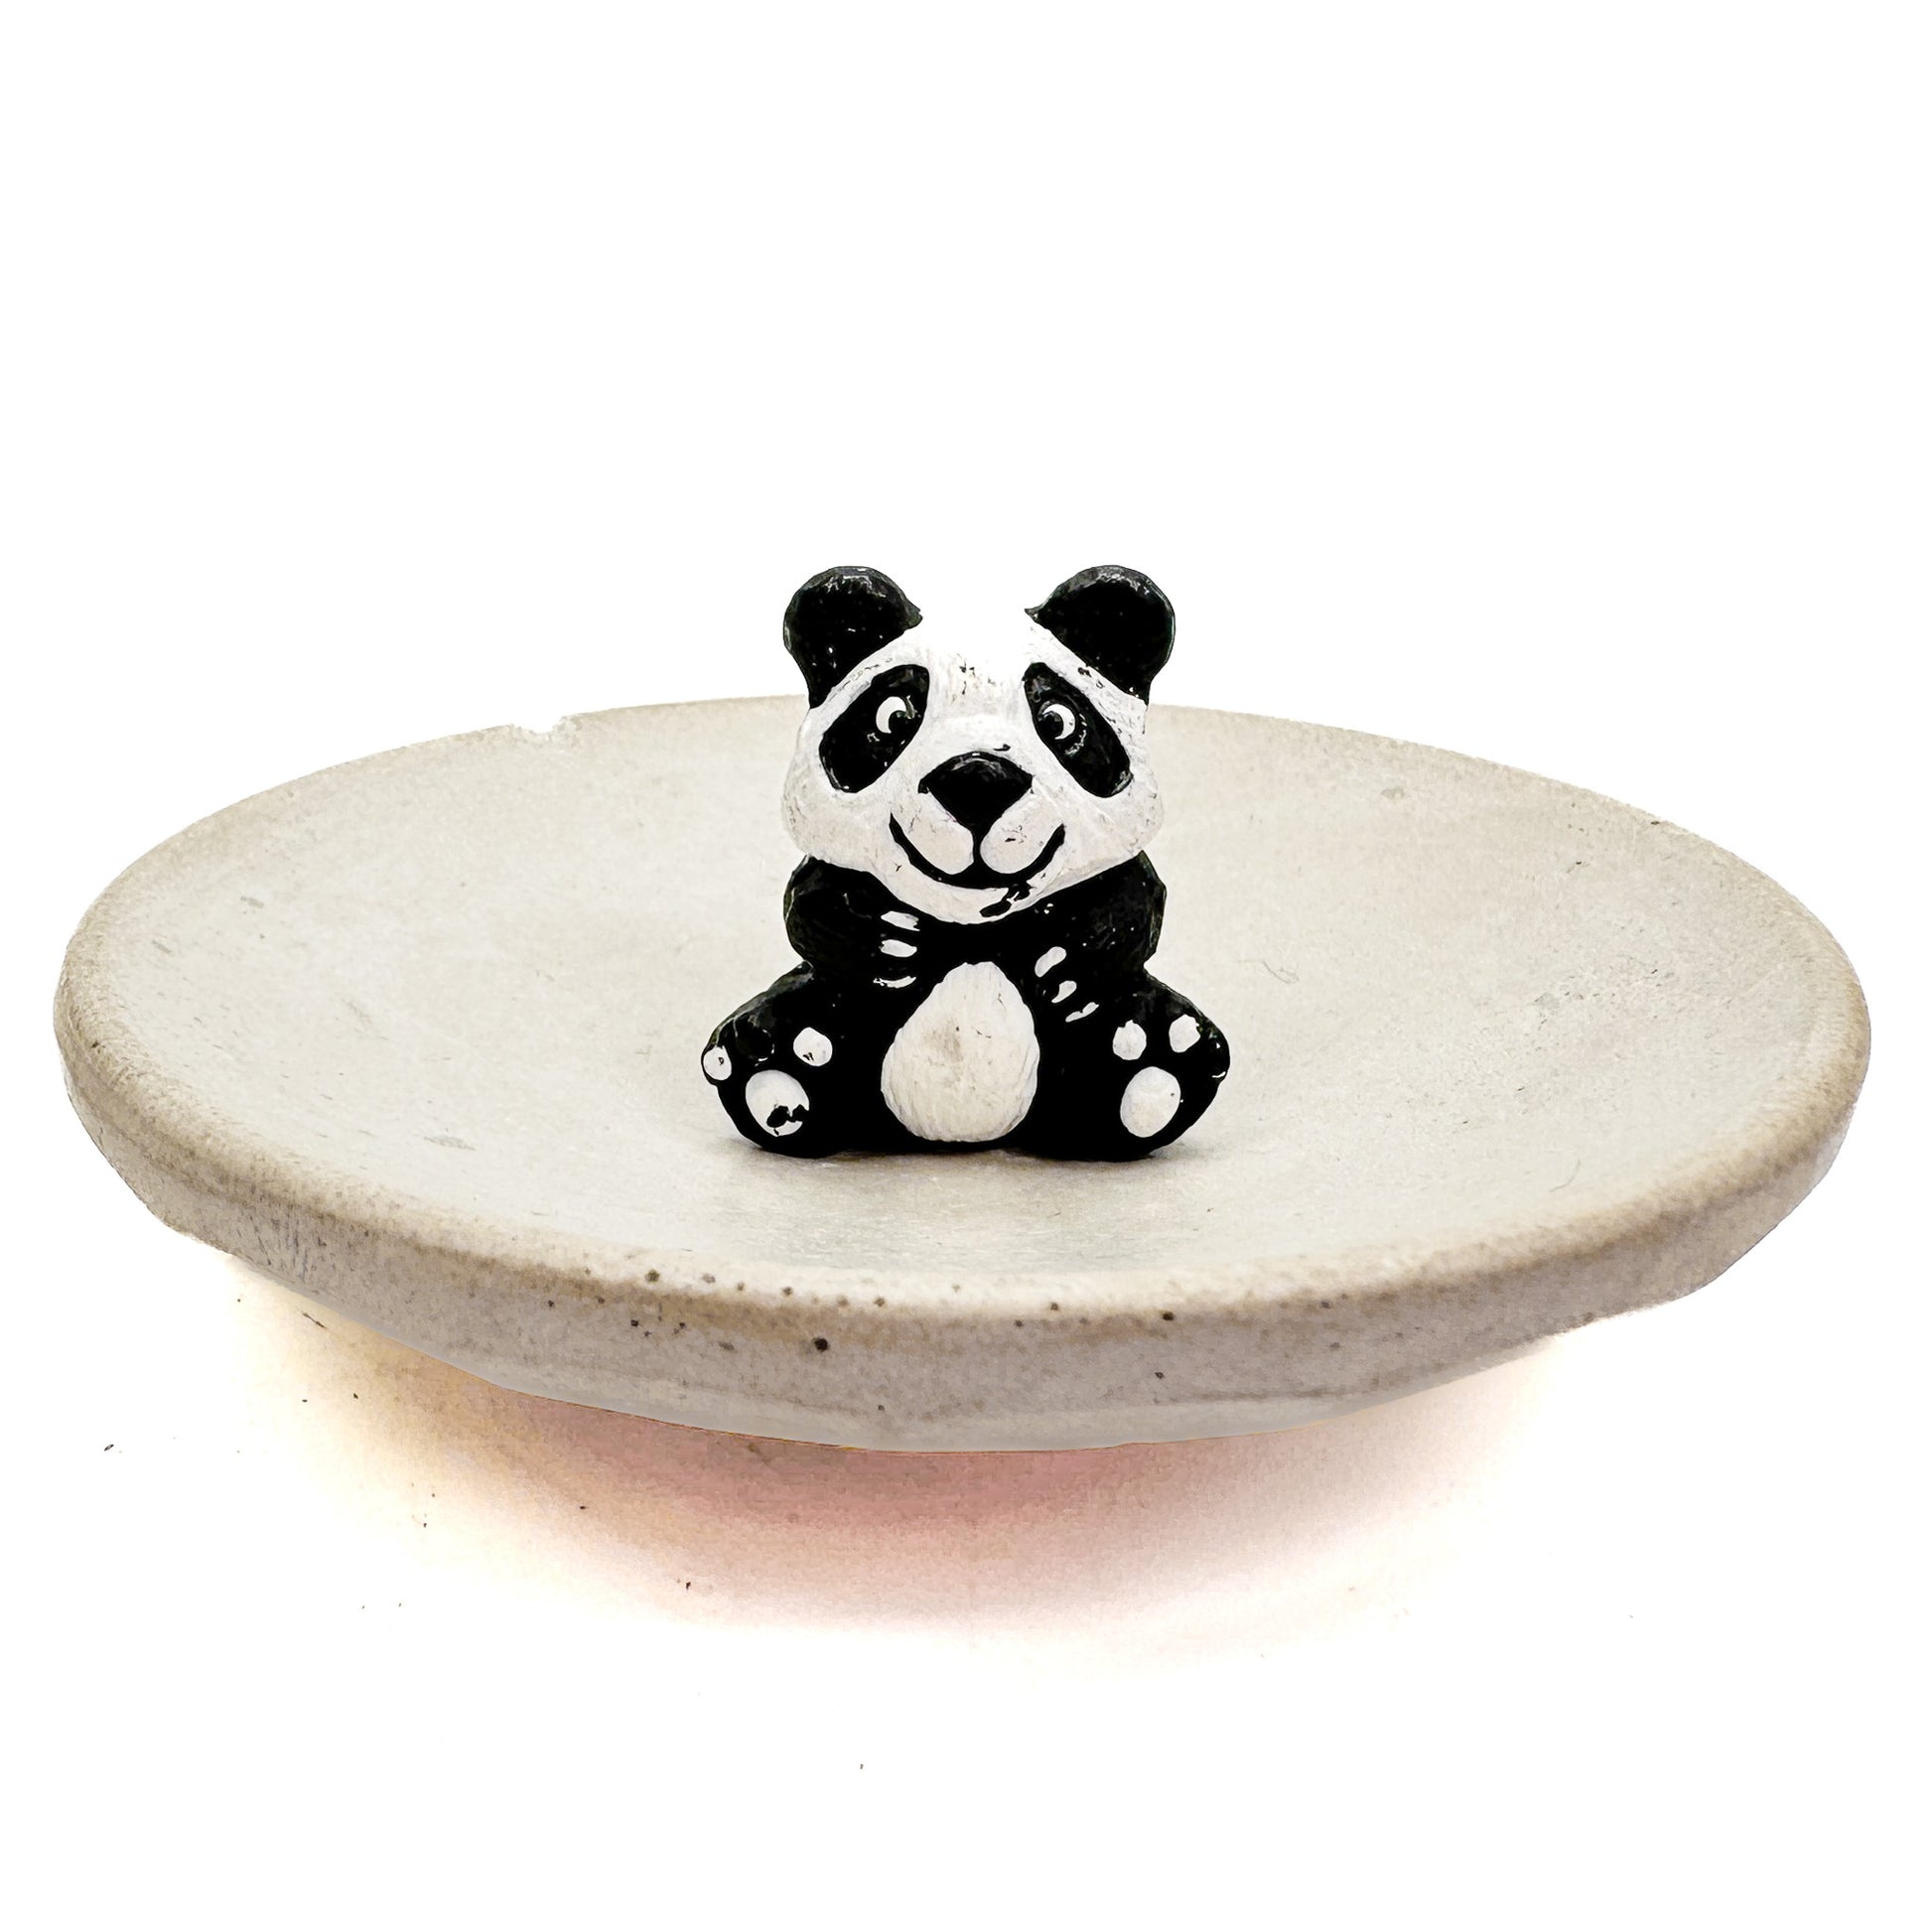 Panda Bear (Ceramic) - 1 pc.-The Bead Gallery Honolulu